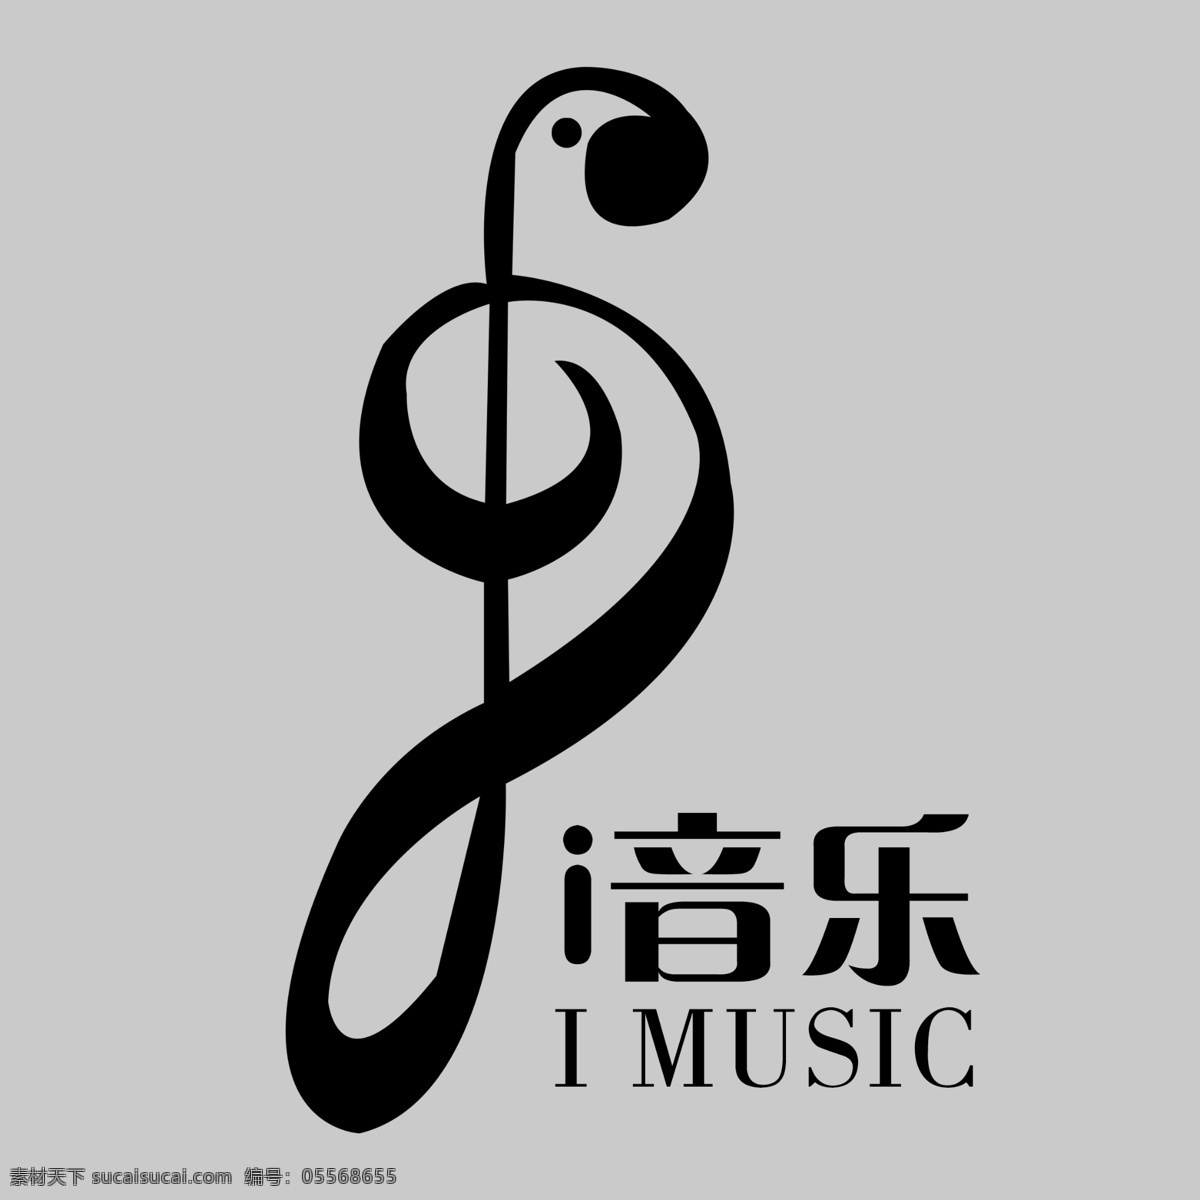 音乐 logo 音乐logo 字母 字母logo 矢量 矢量图制作 个性化设计 图案 图标 标志图标 标志 简洁logo ps